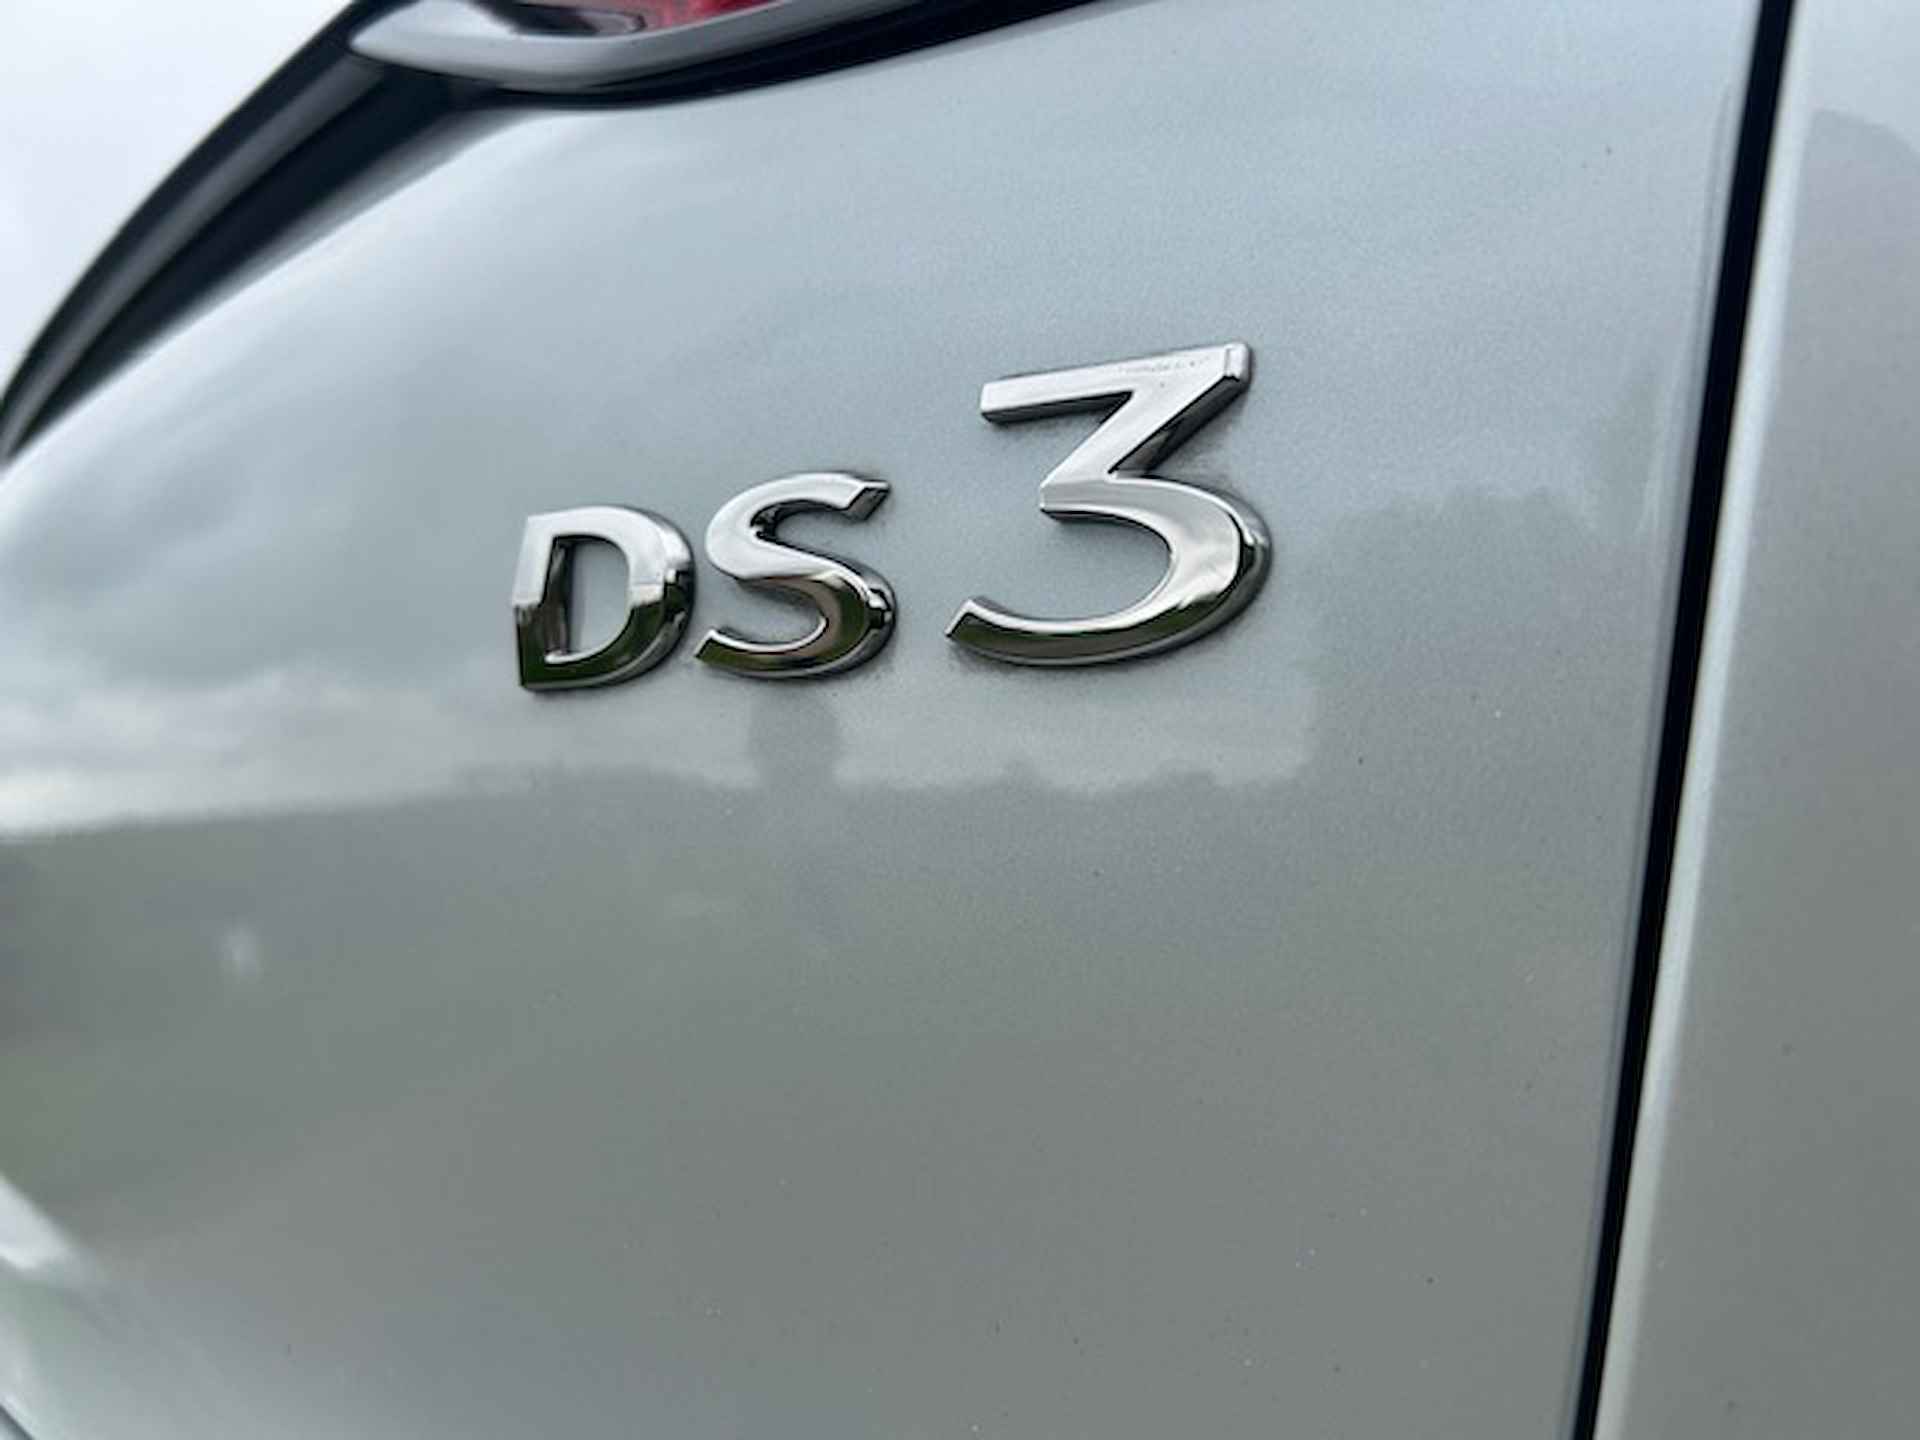 DS Ds 3 Crossback 1.2 PureTech 100pk Montmartre | Navigatie | All season banden | Climate control | Apple carplay / Android auto | Pdc | NAP | Rijklaar prijs! - 10/23